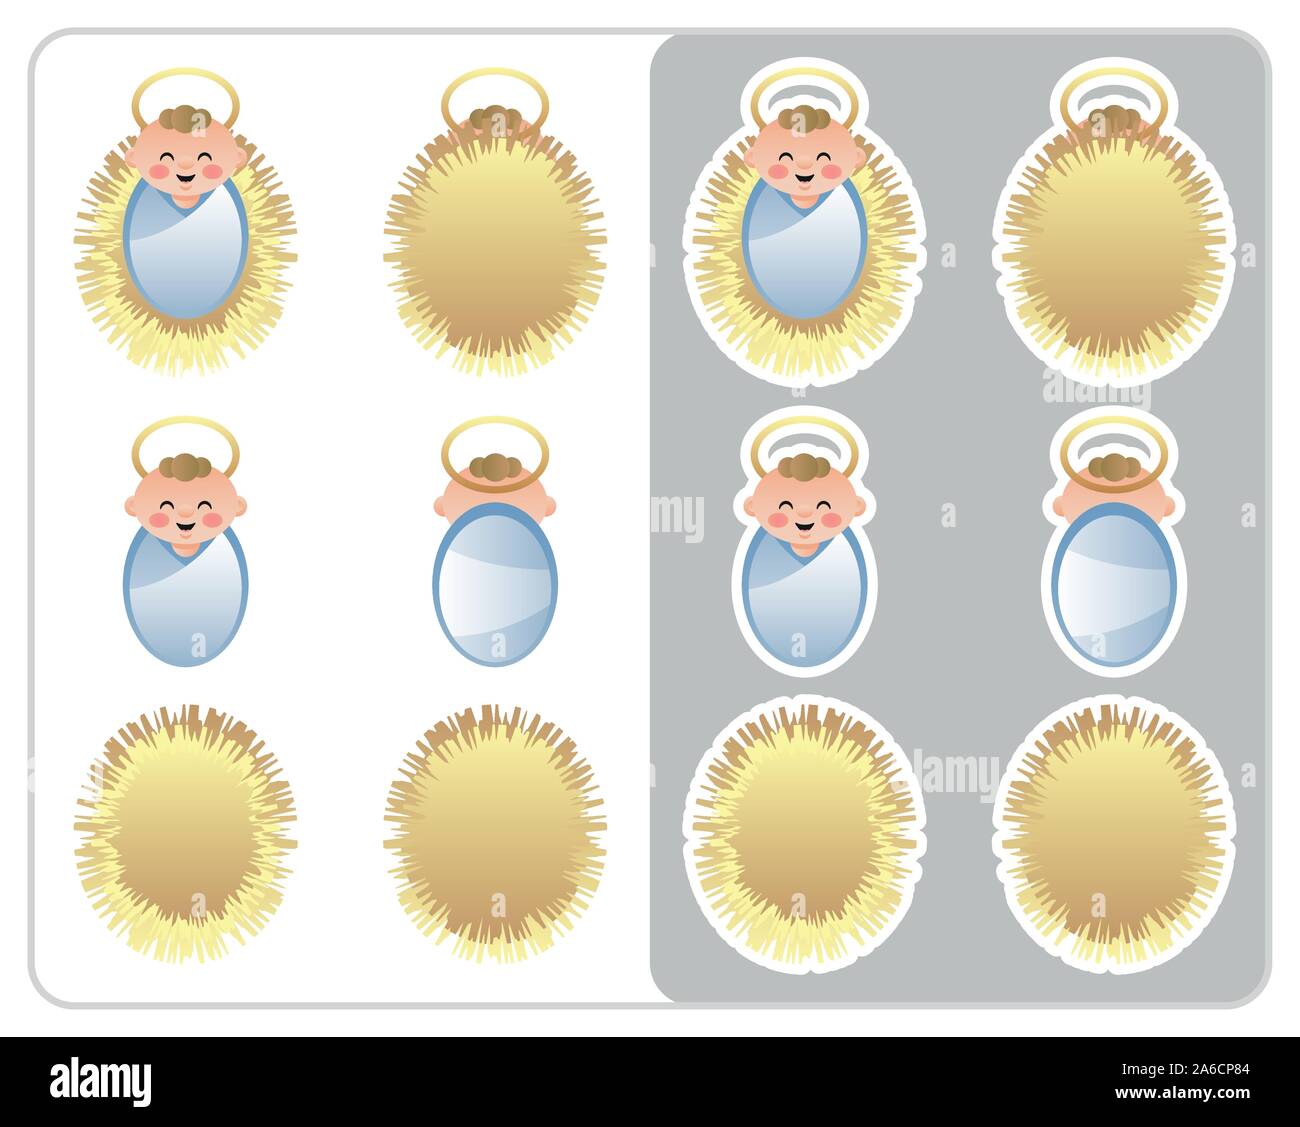 Doppelseitige Geburt Symbol und Aufkleber der Baby Jesus und der Krippe. Cute cartoon Charakter. Vector Illustration ohne Transparenz. Stock Vektor